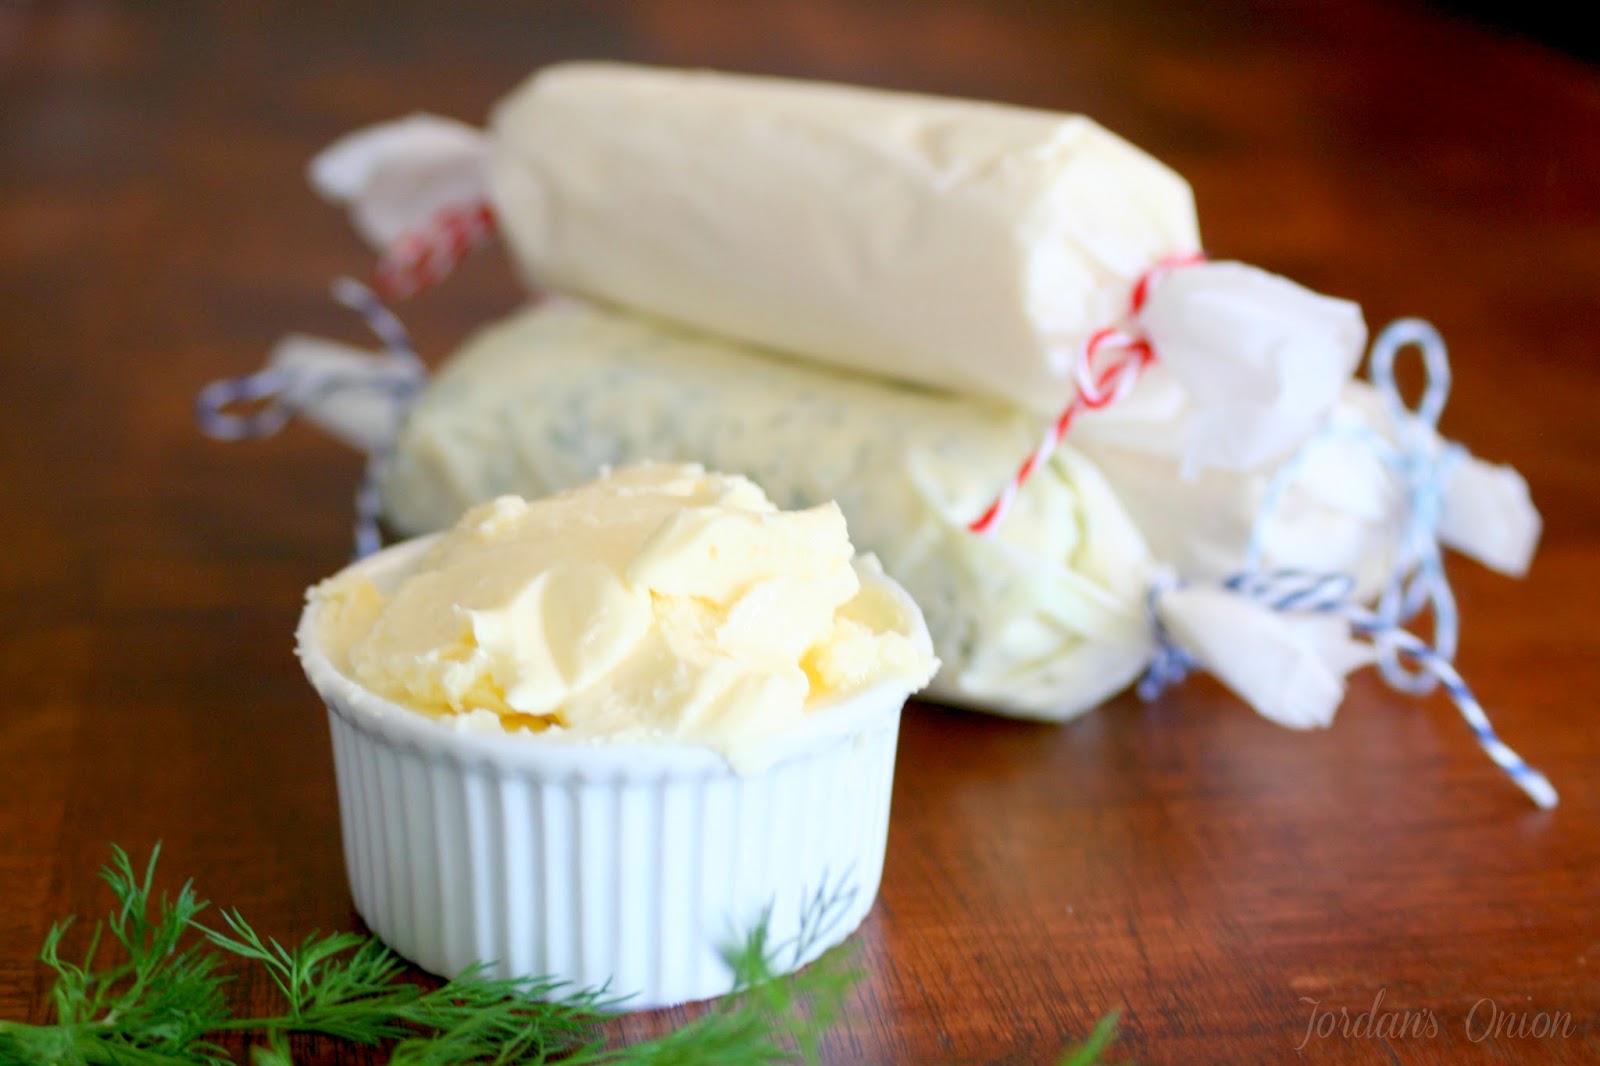  Homemade Butter